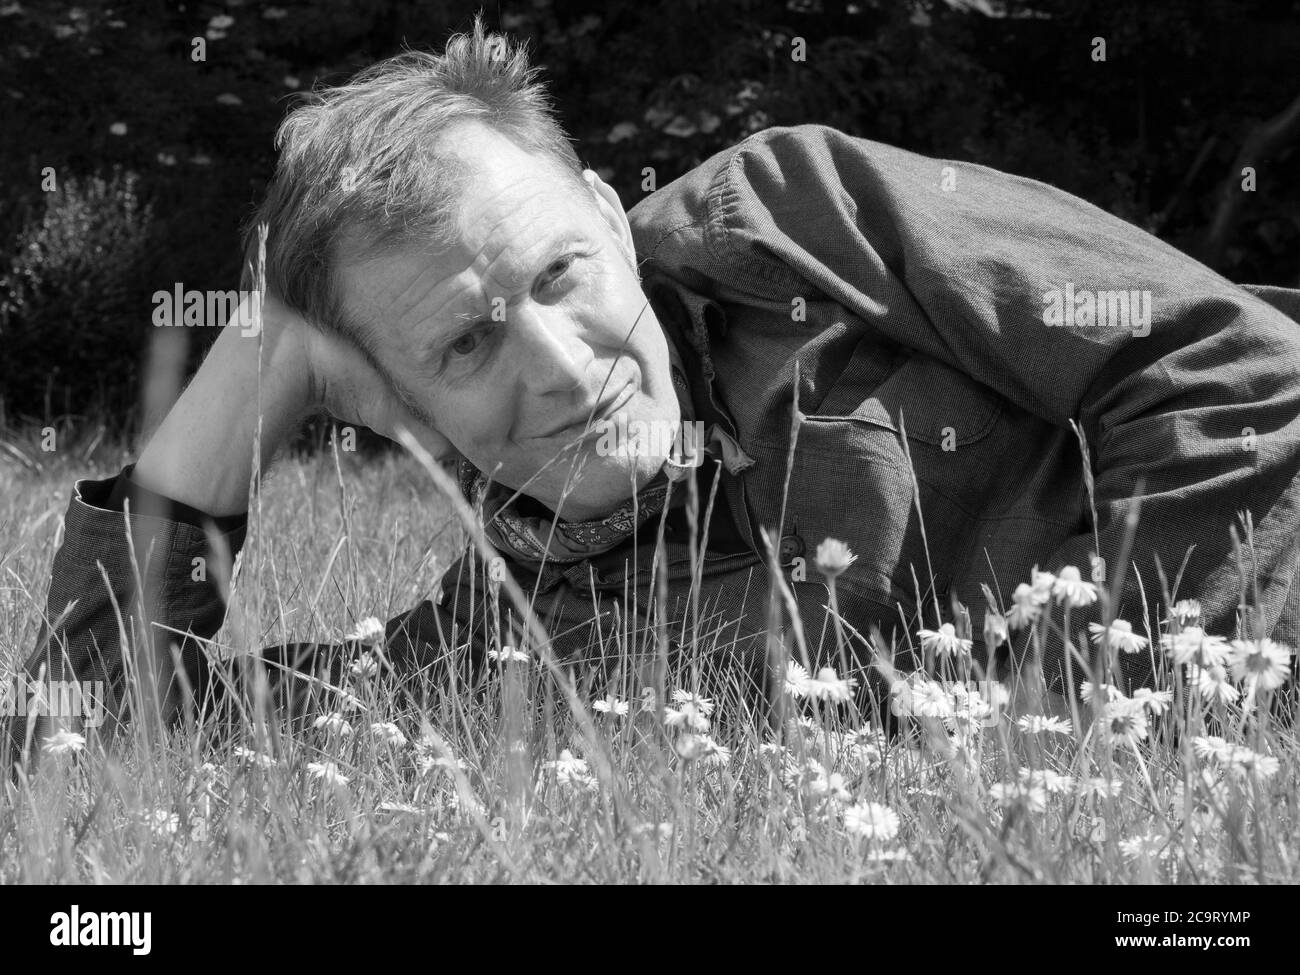 El actor Jason Flemyng, de 53 años, fotografiado con distanciamiento social durante el encierro en Londres, 18 de mayo de 2020. Foto de stock